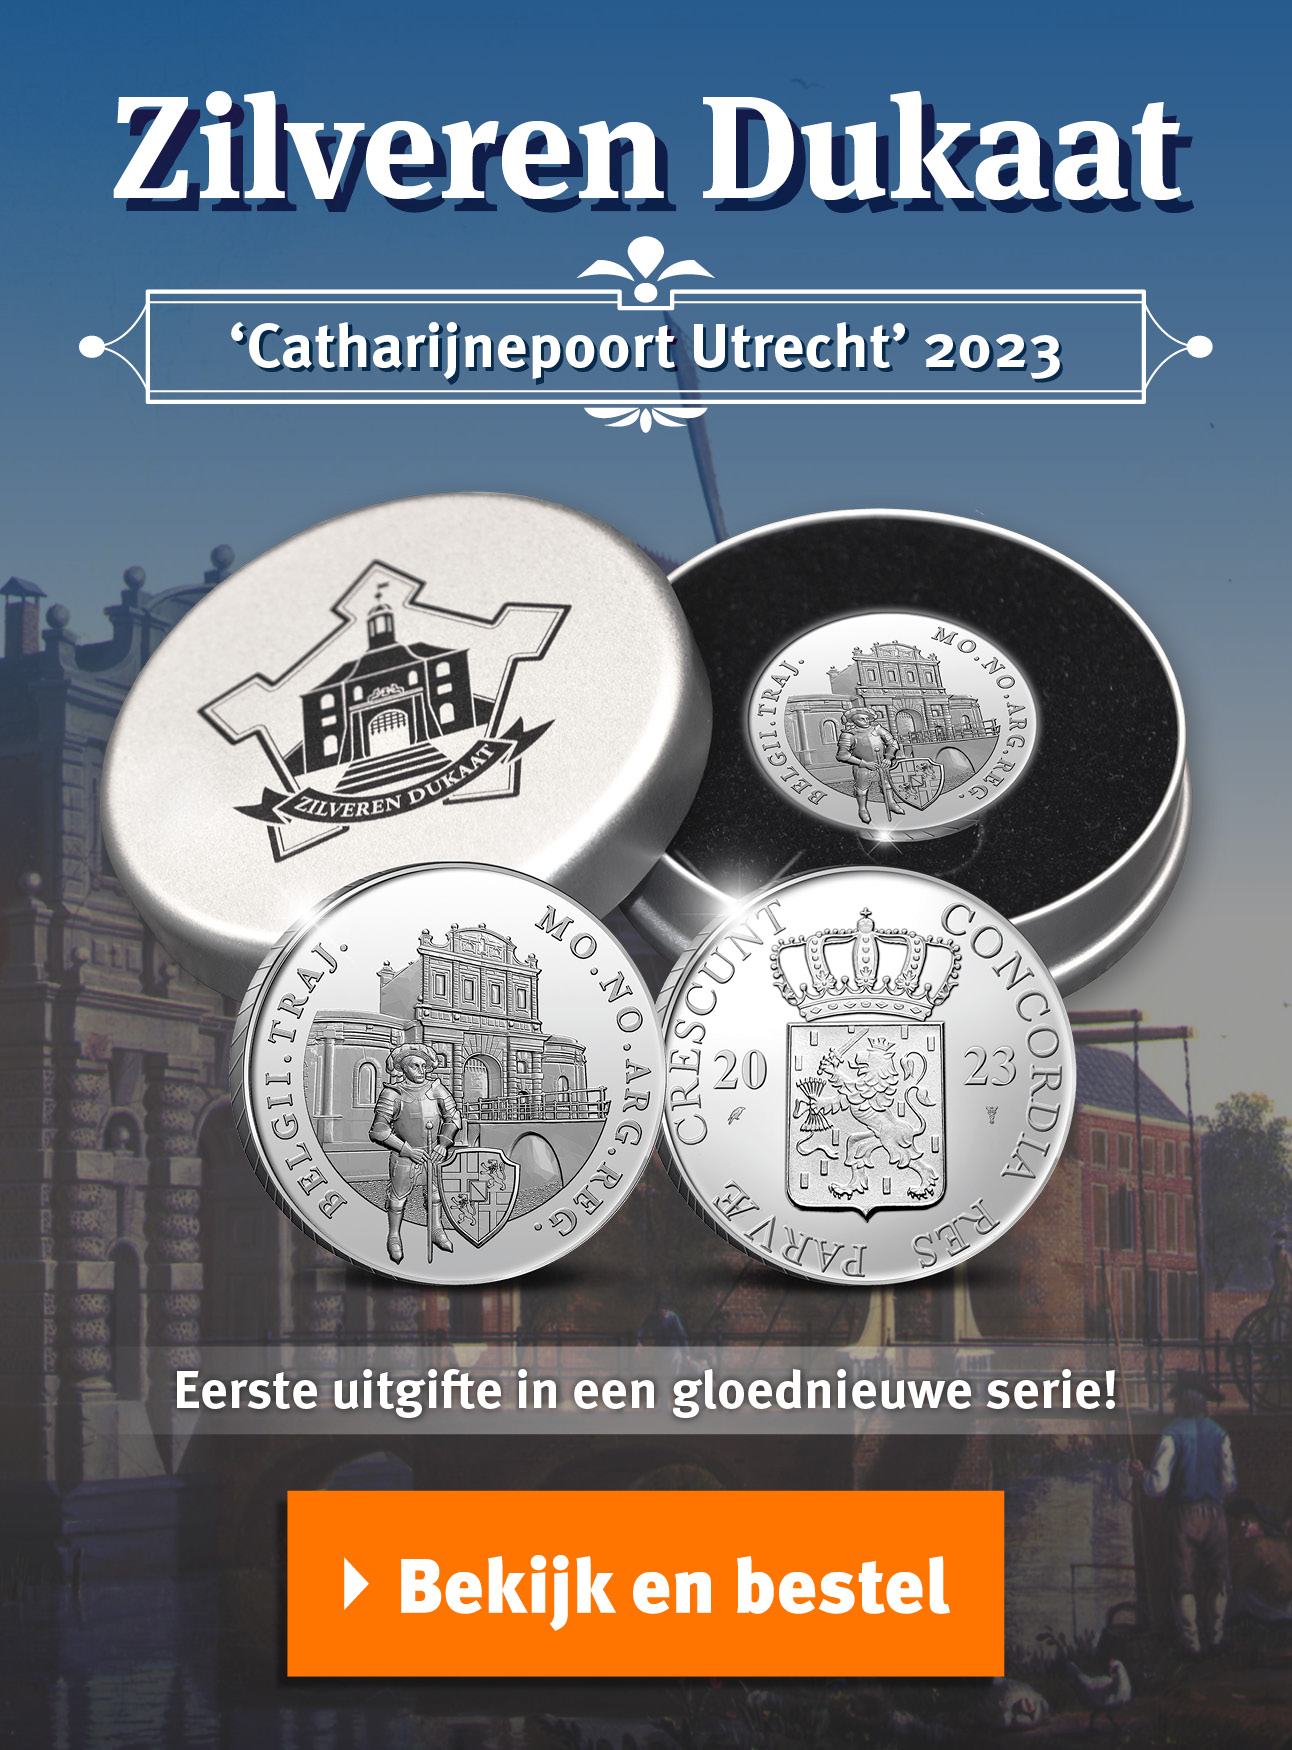 Bekijk en bestel: Zilveren Dukaat Catharijnepoort Utrecht 2023